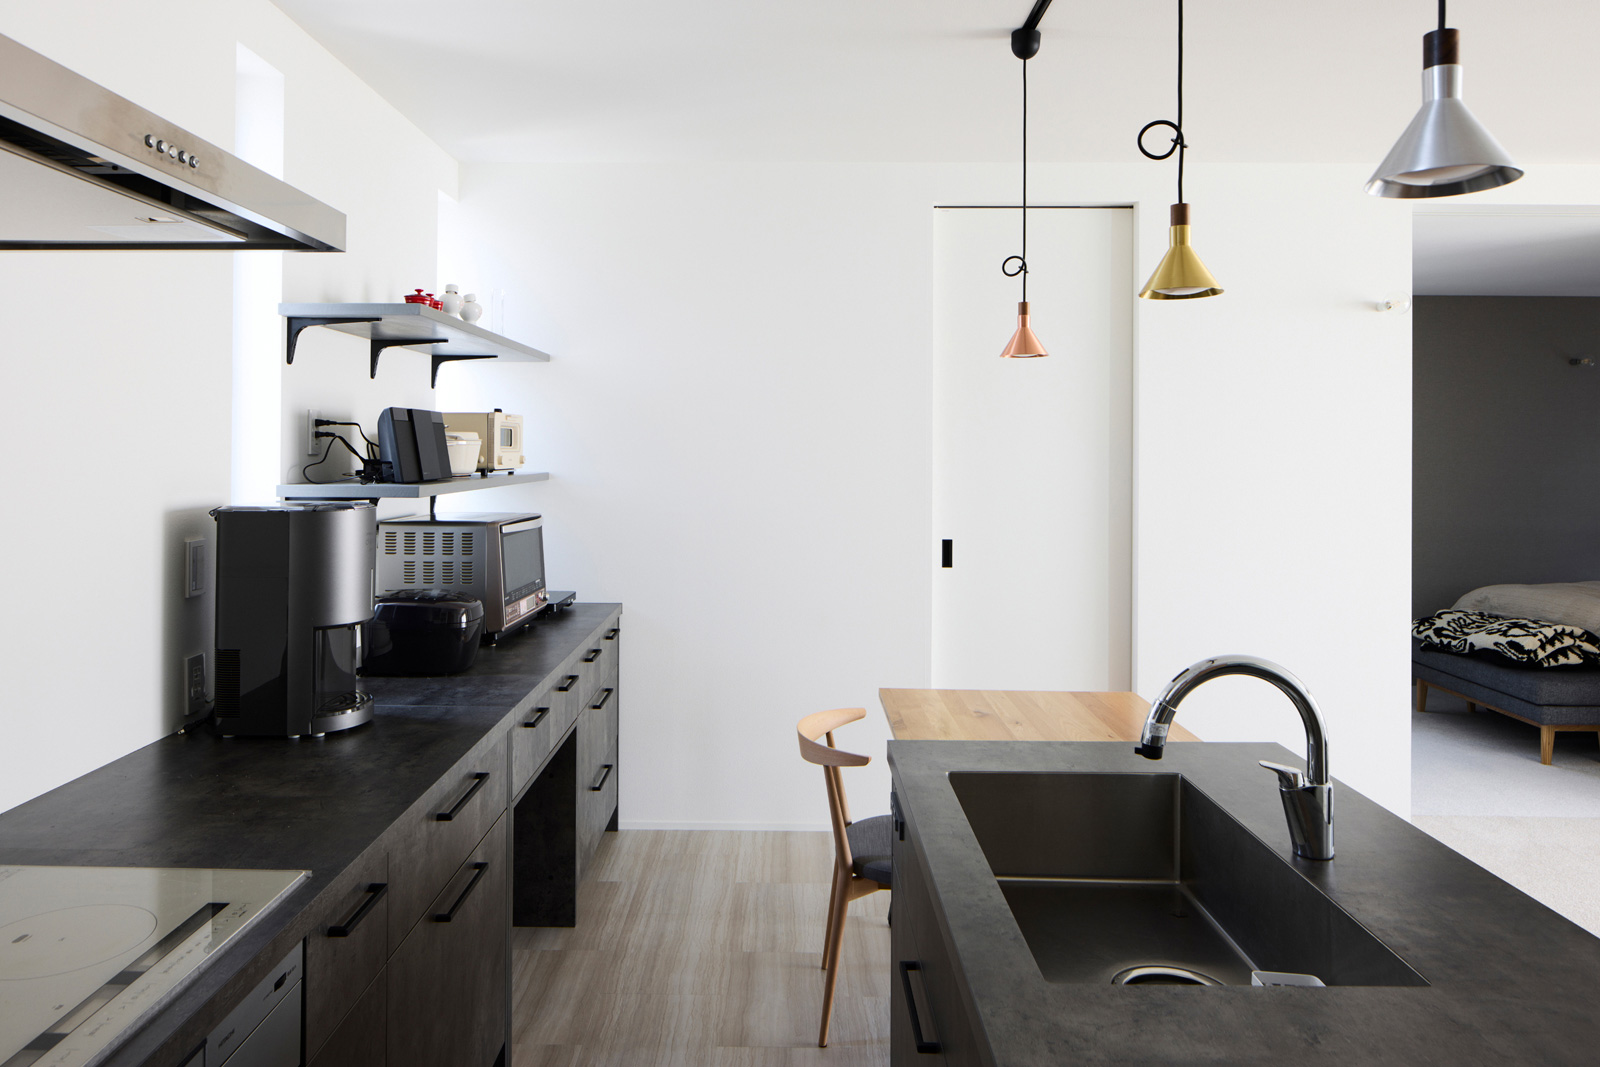 キッチンまわりはブラックで統一。ダイニングテーブルはキッチン幅やスペースに合わせて造作した伸縮タイプ